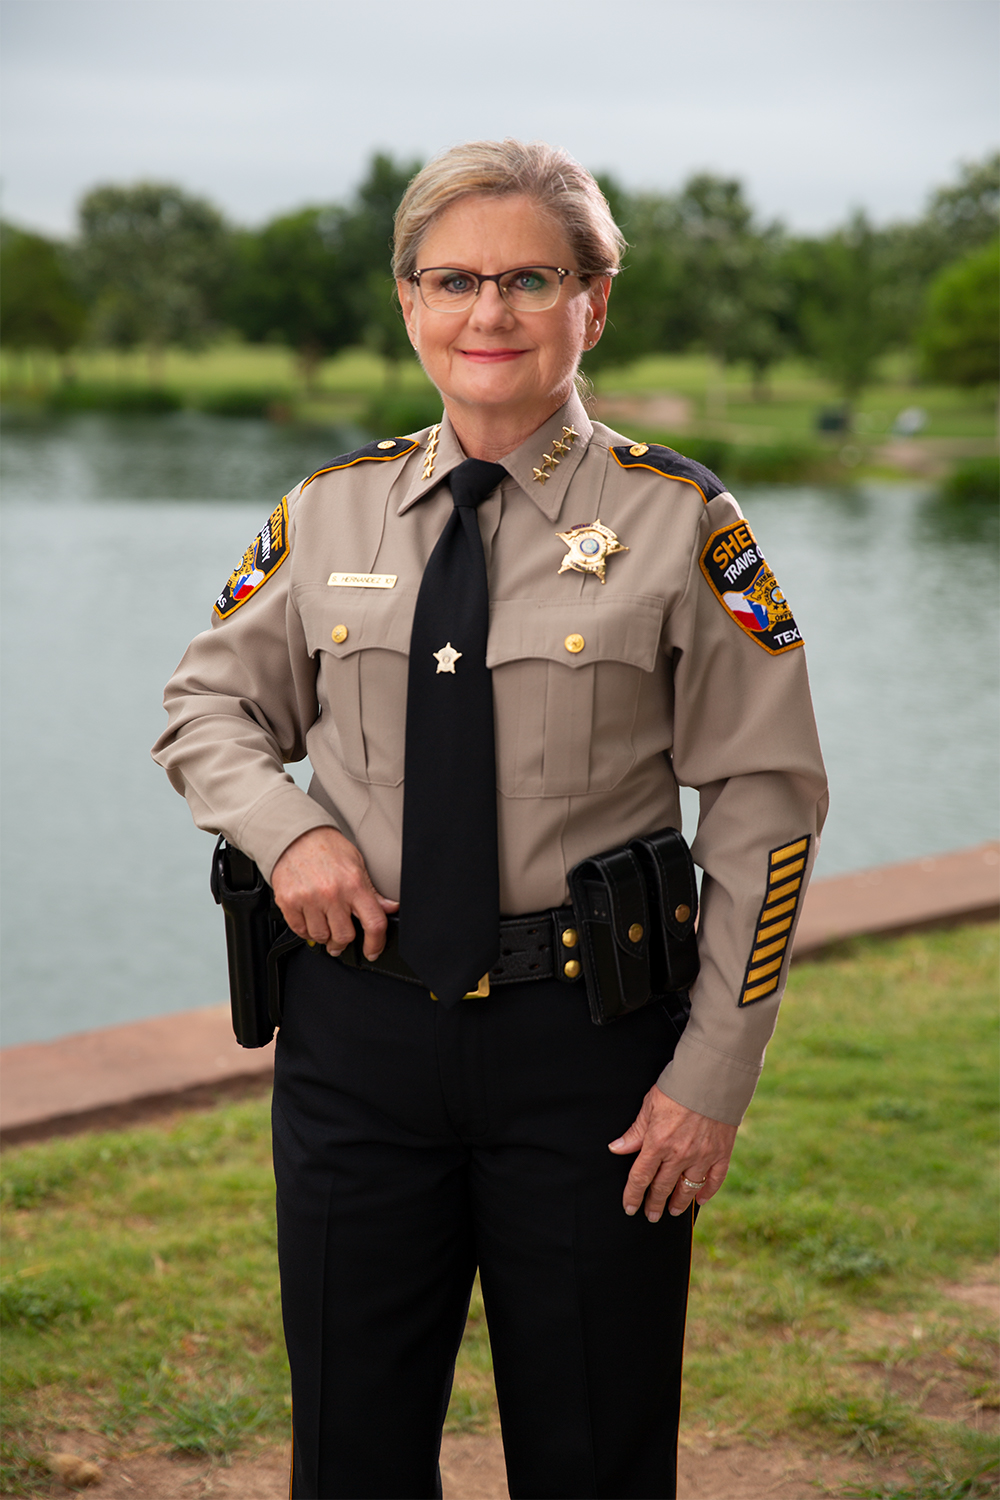 Sheriff Sally Hernandez